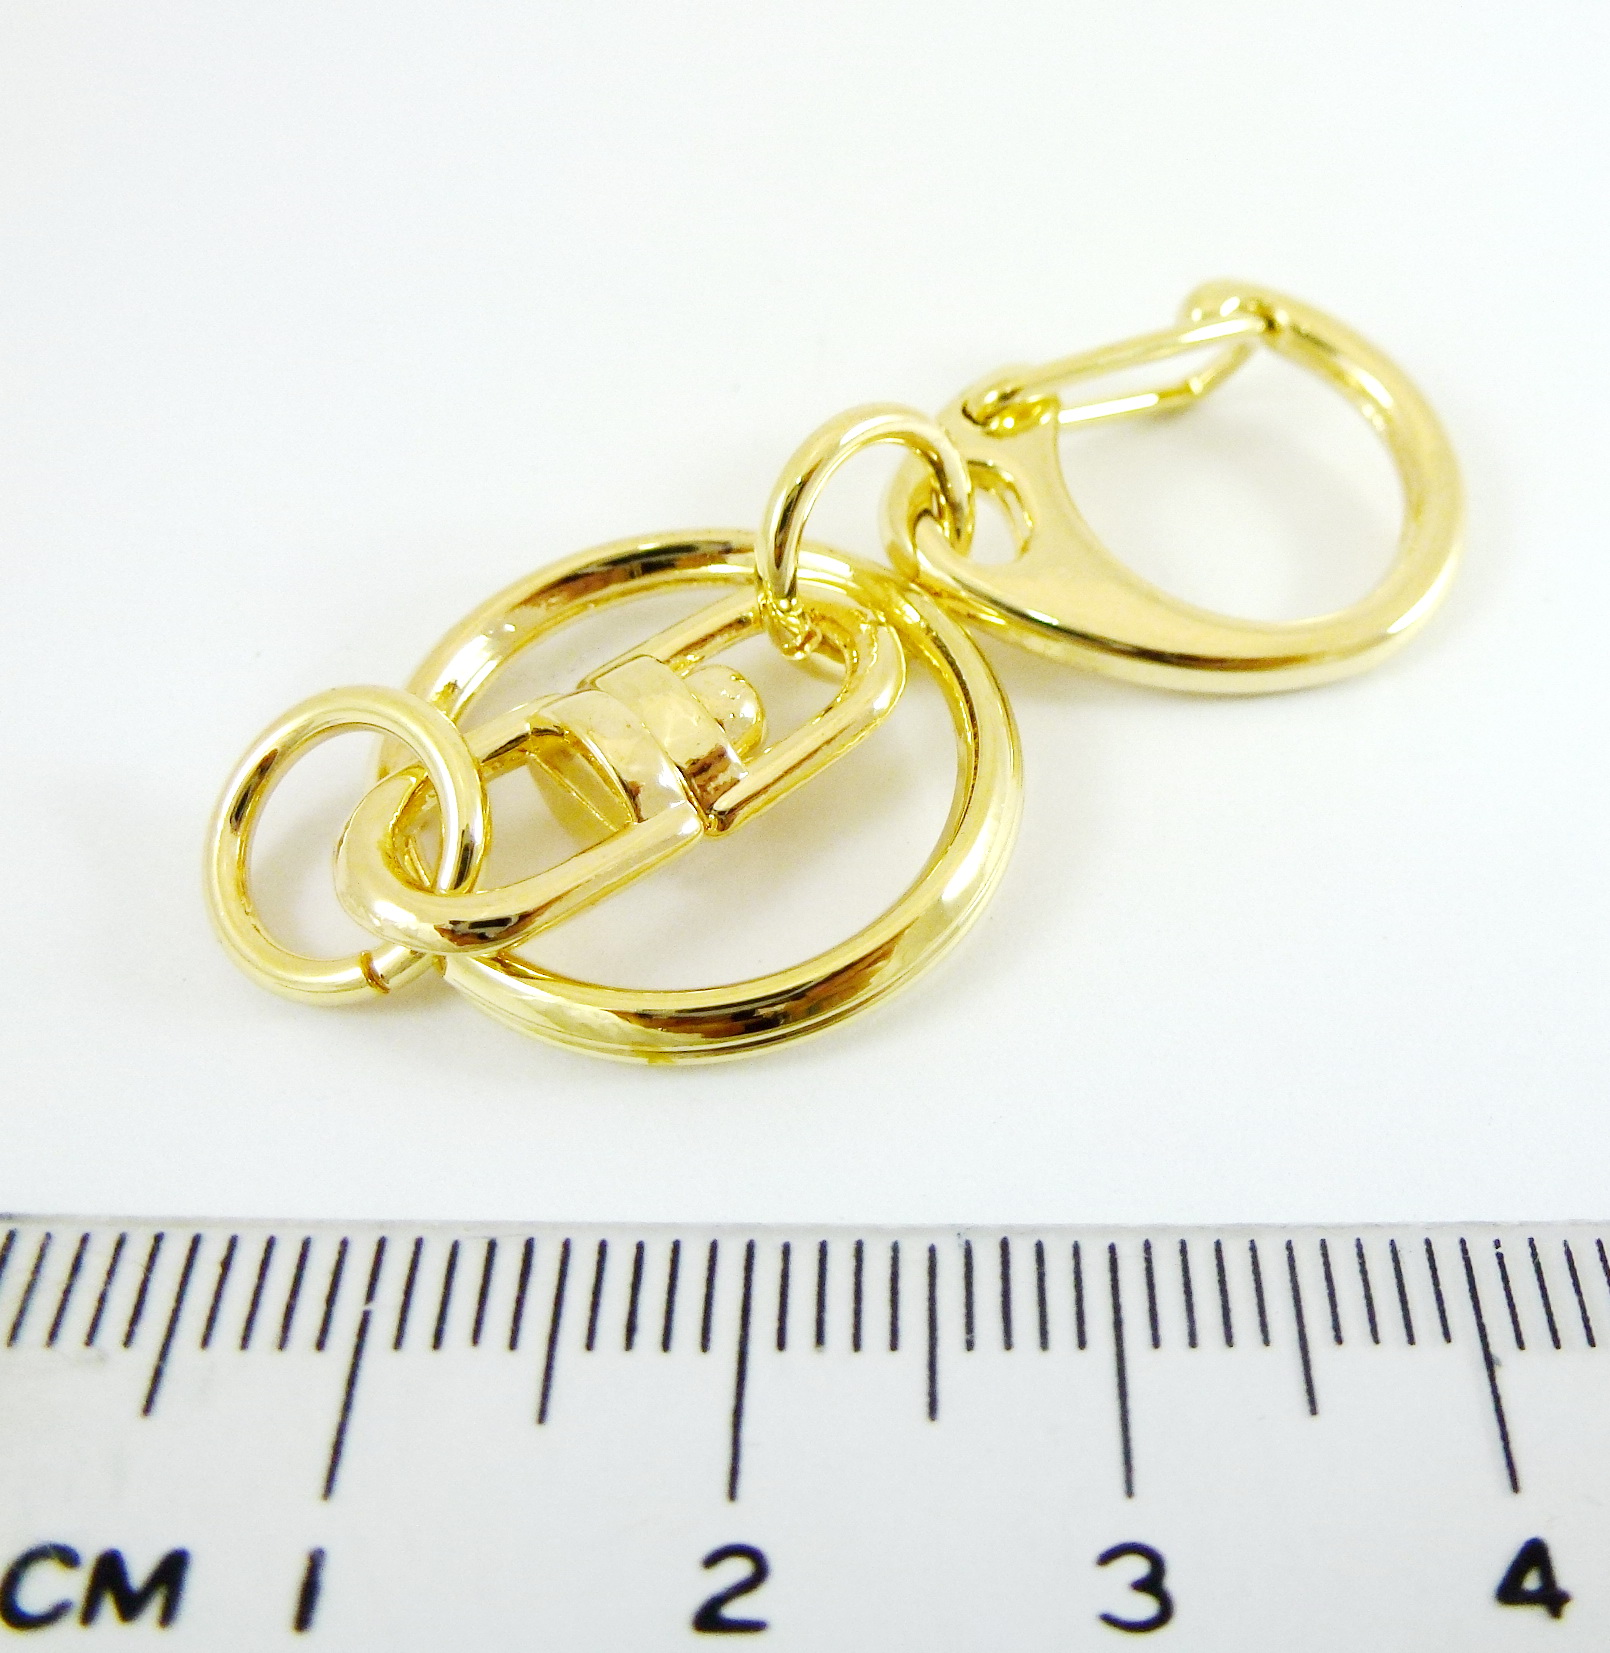 24mm銅鍍金色C形鉤附圓形雙圈鑰匙圈